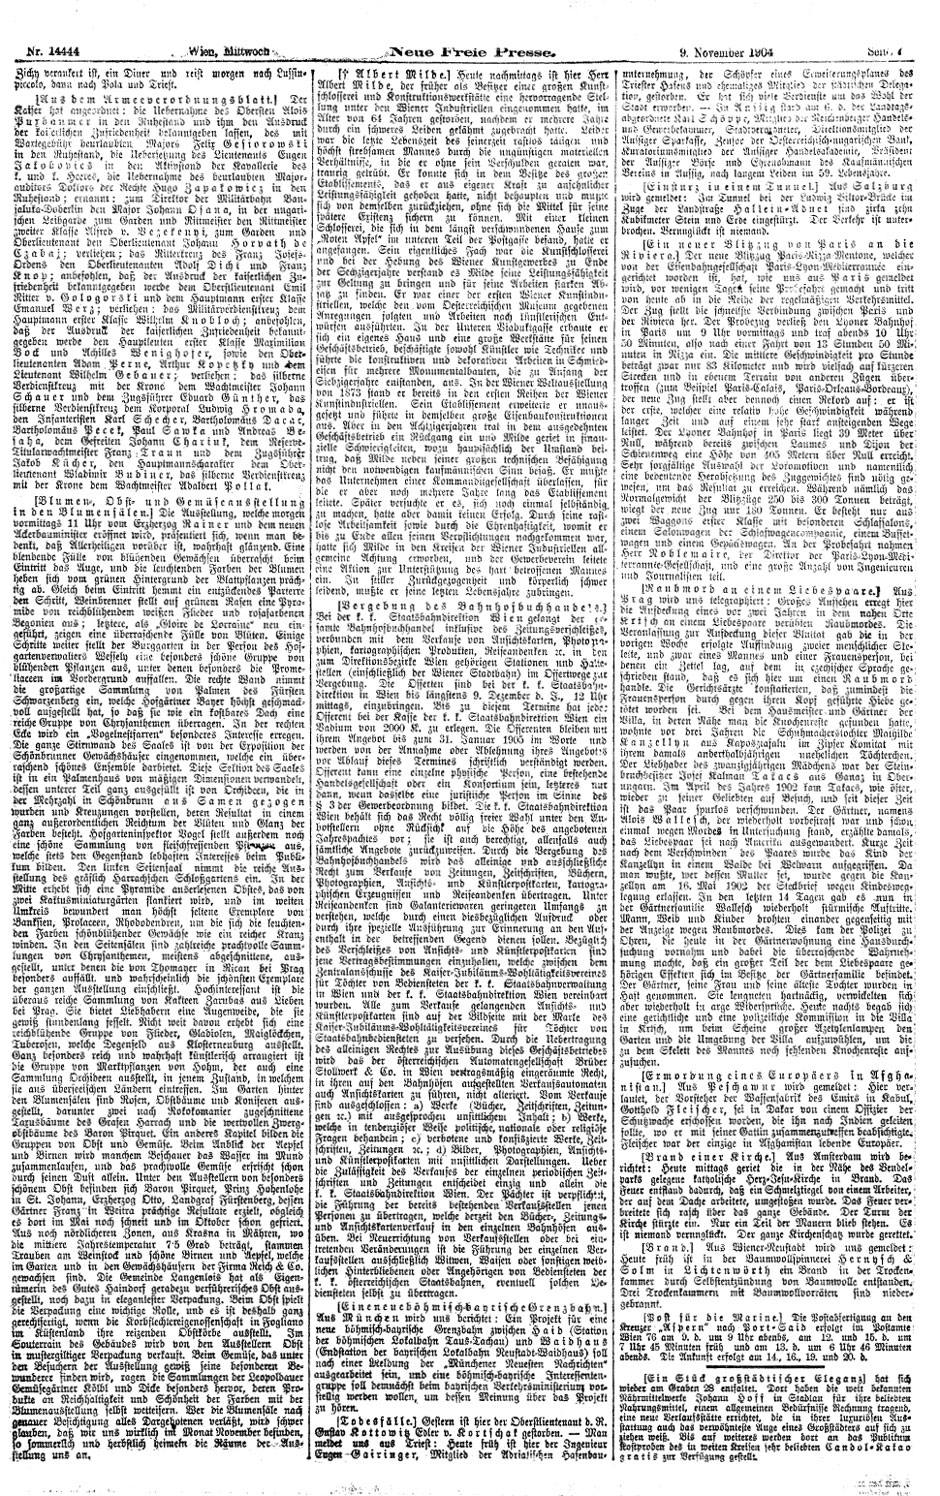 Neue Freie Presse, 9.11.1904, Seite 7